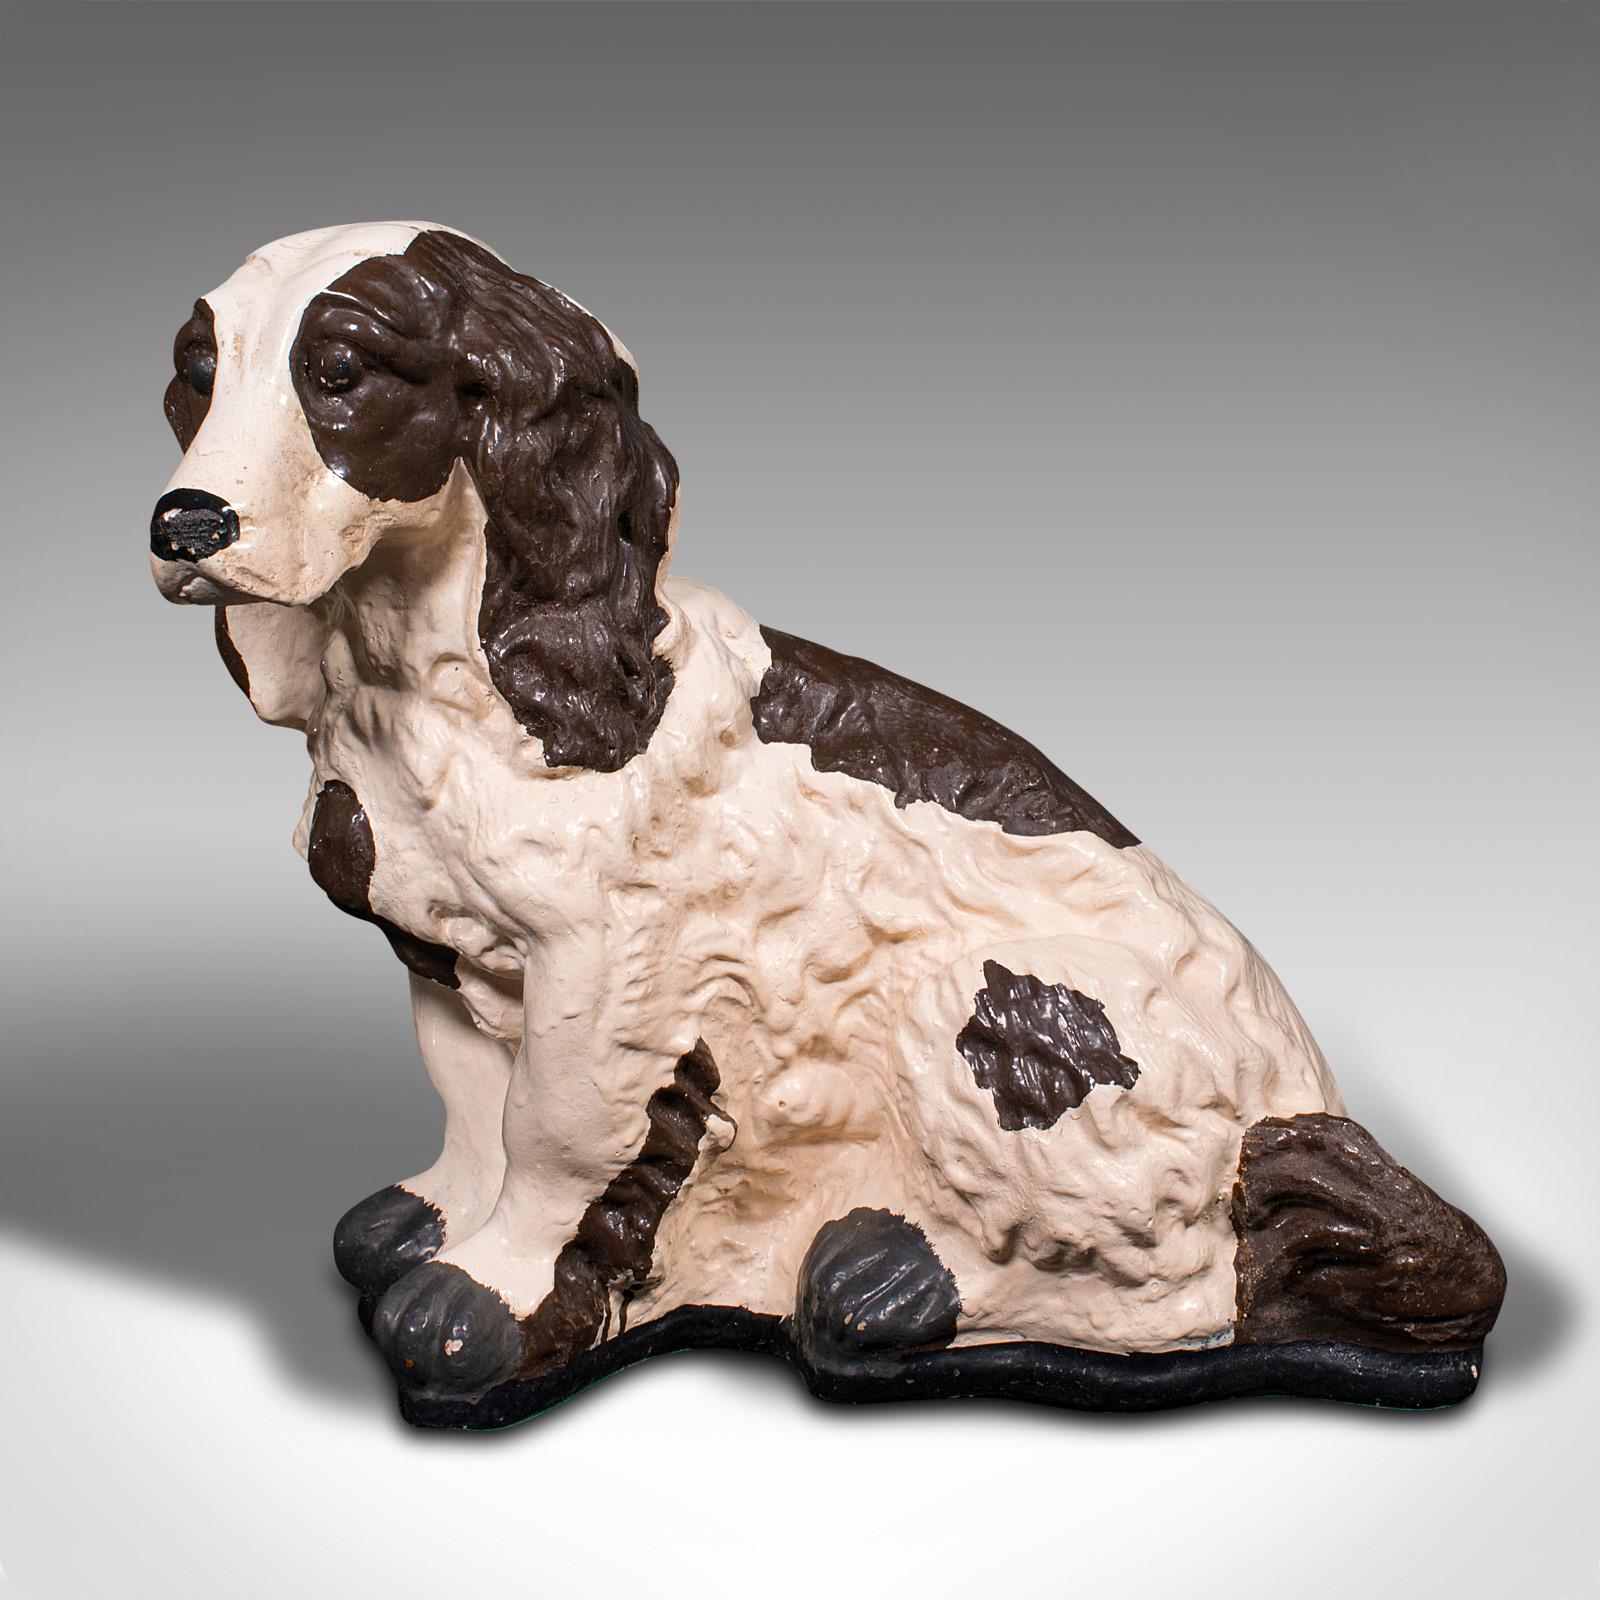 Il s'agit d'une statue antique de cocker. Un chien anglais en plâtre, datant de la fin de la période victorienne, vers 1900.

Beau spécimen décoratif de la race populaire
Présente une patine d'ancienneté souhaitable et est en bon état d'origine.
Les